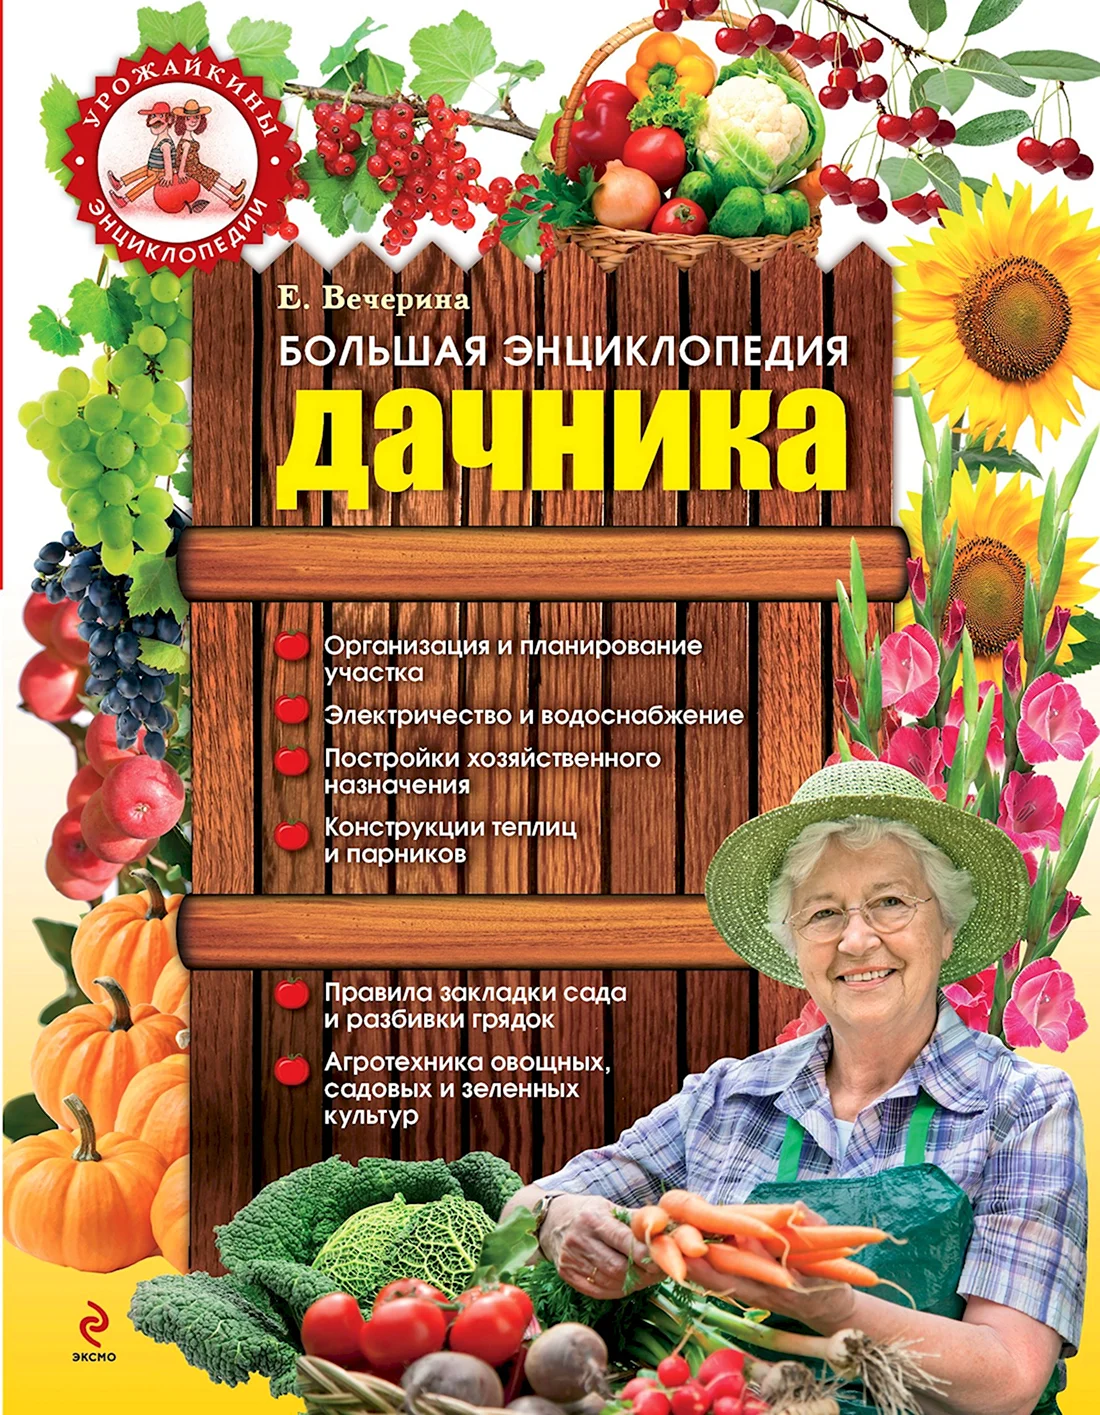 Энциклопедия дачника. Поздравление на праздник